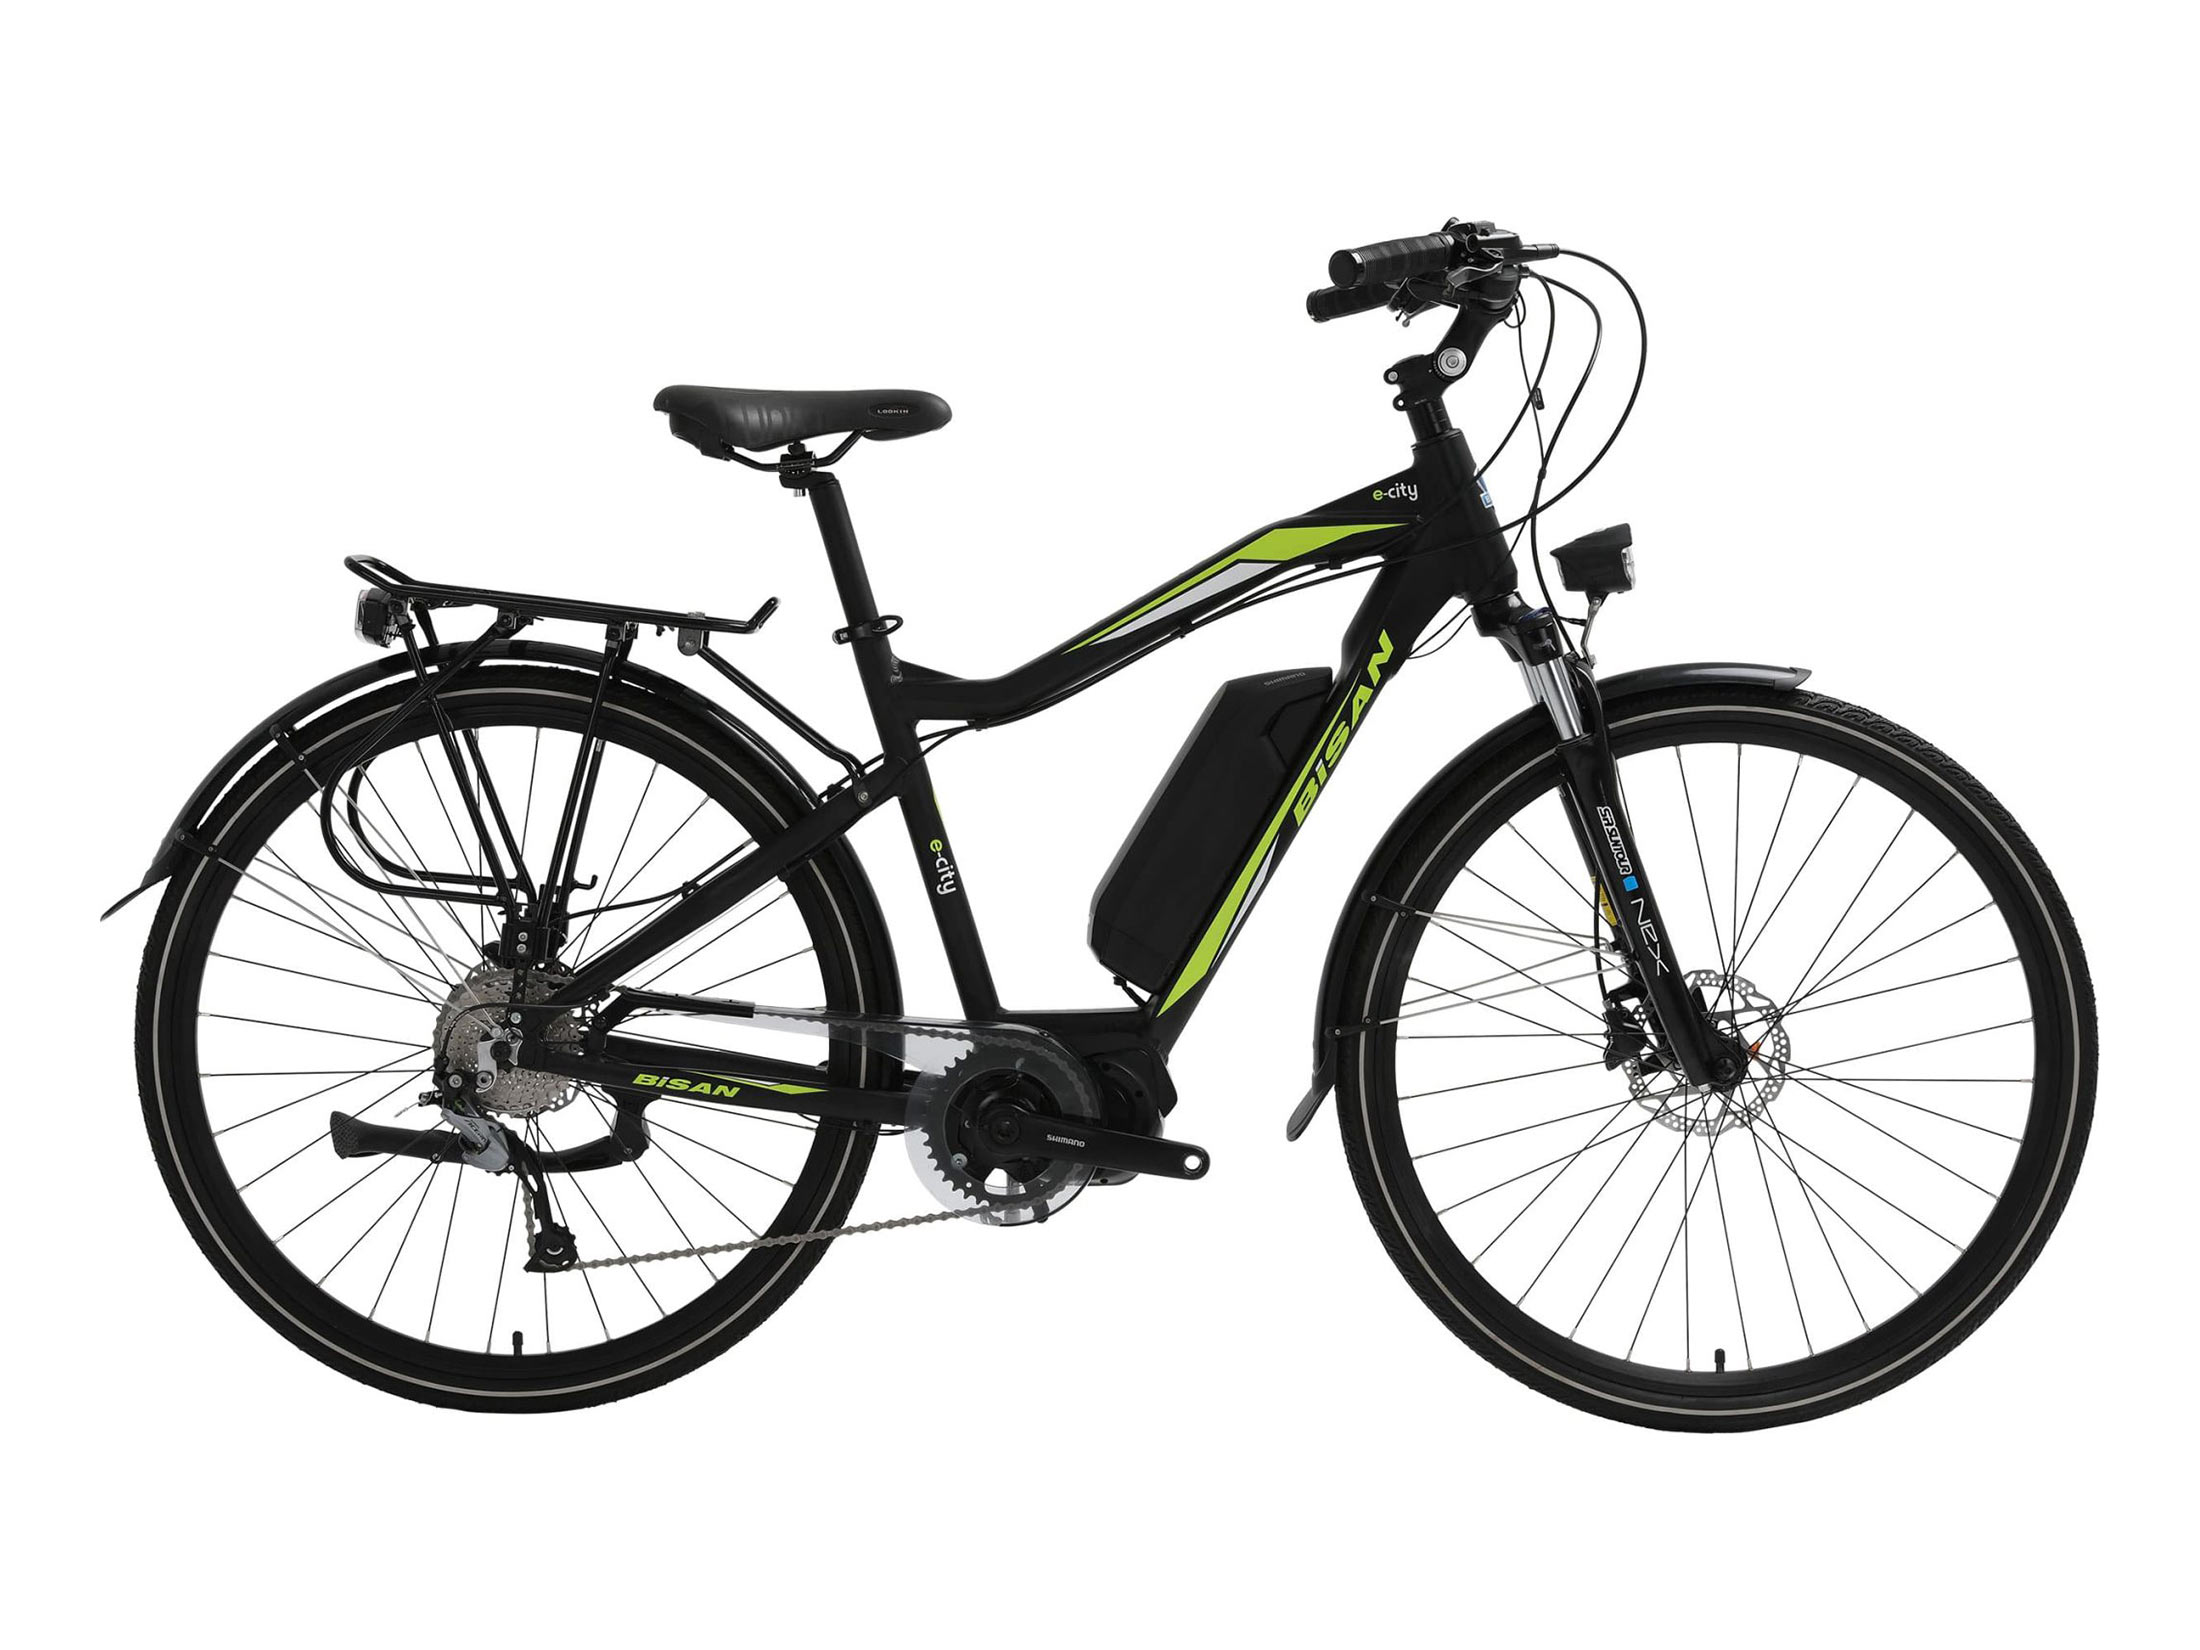 Ηλεκτρικό Ποδήλατο Bisan e-City 700c - Black / Green (49cm)